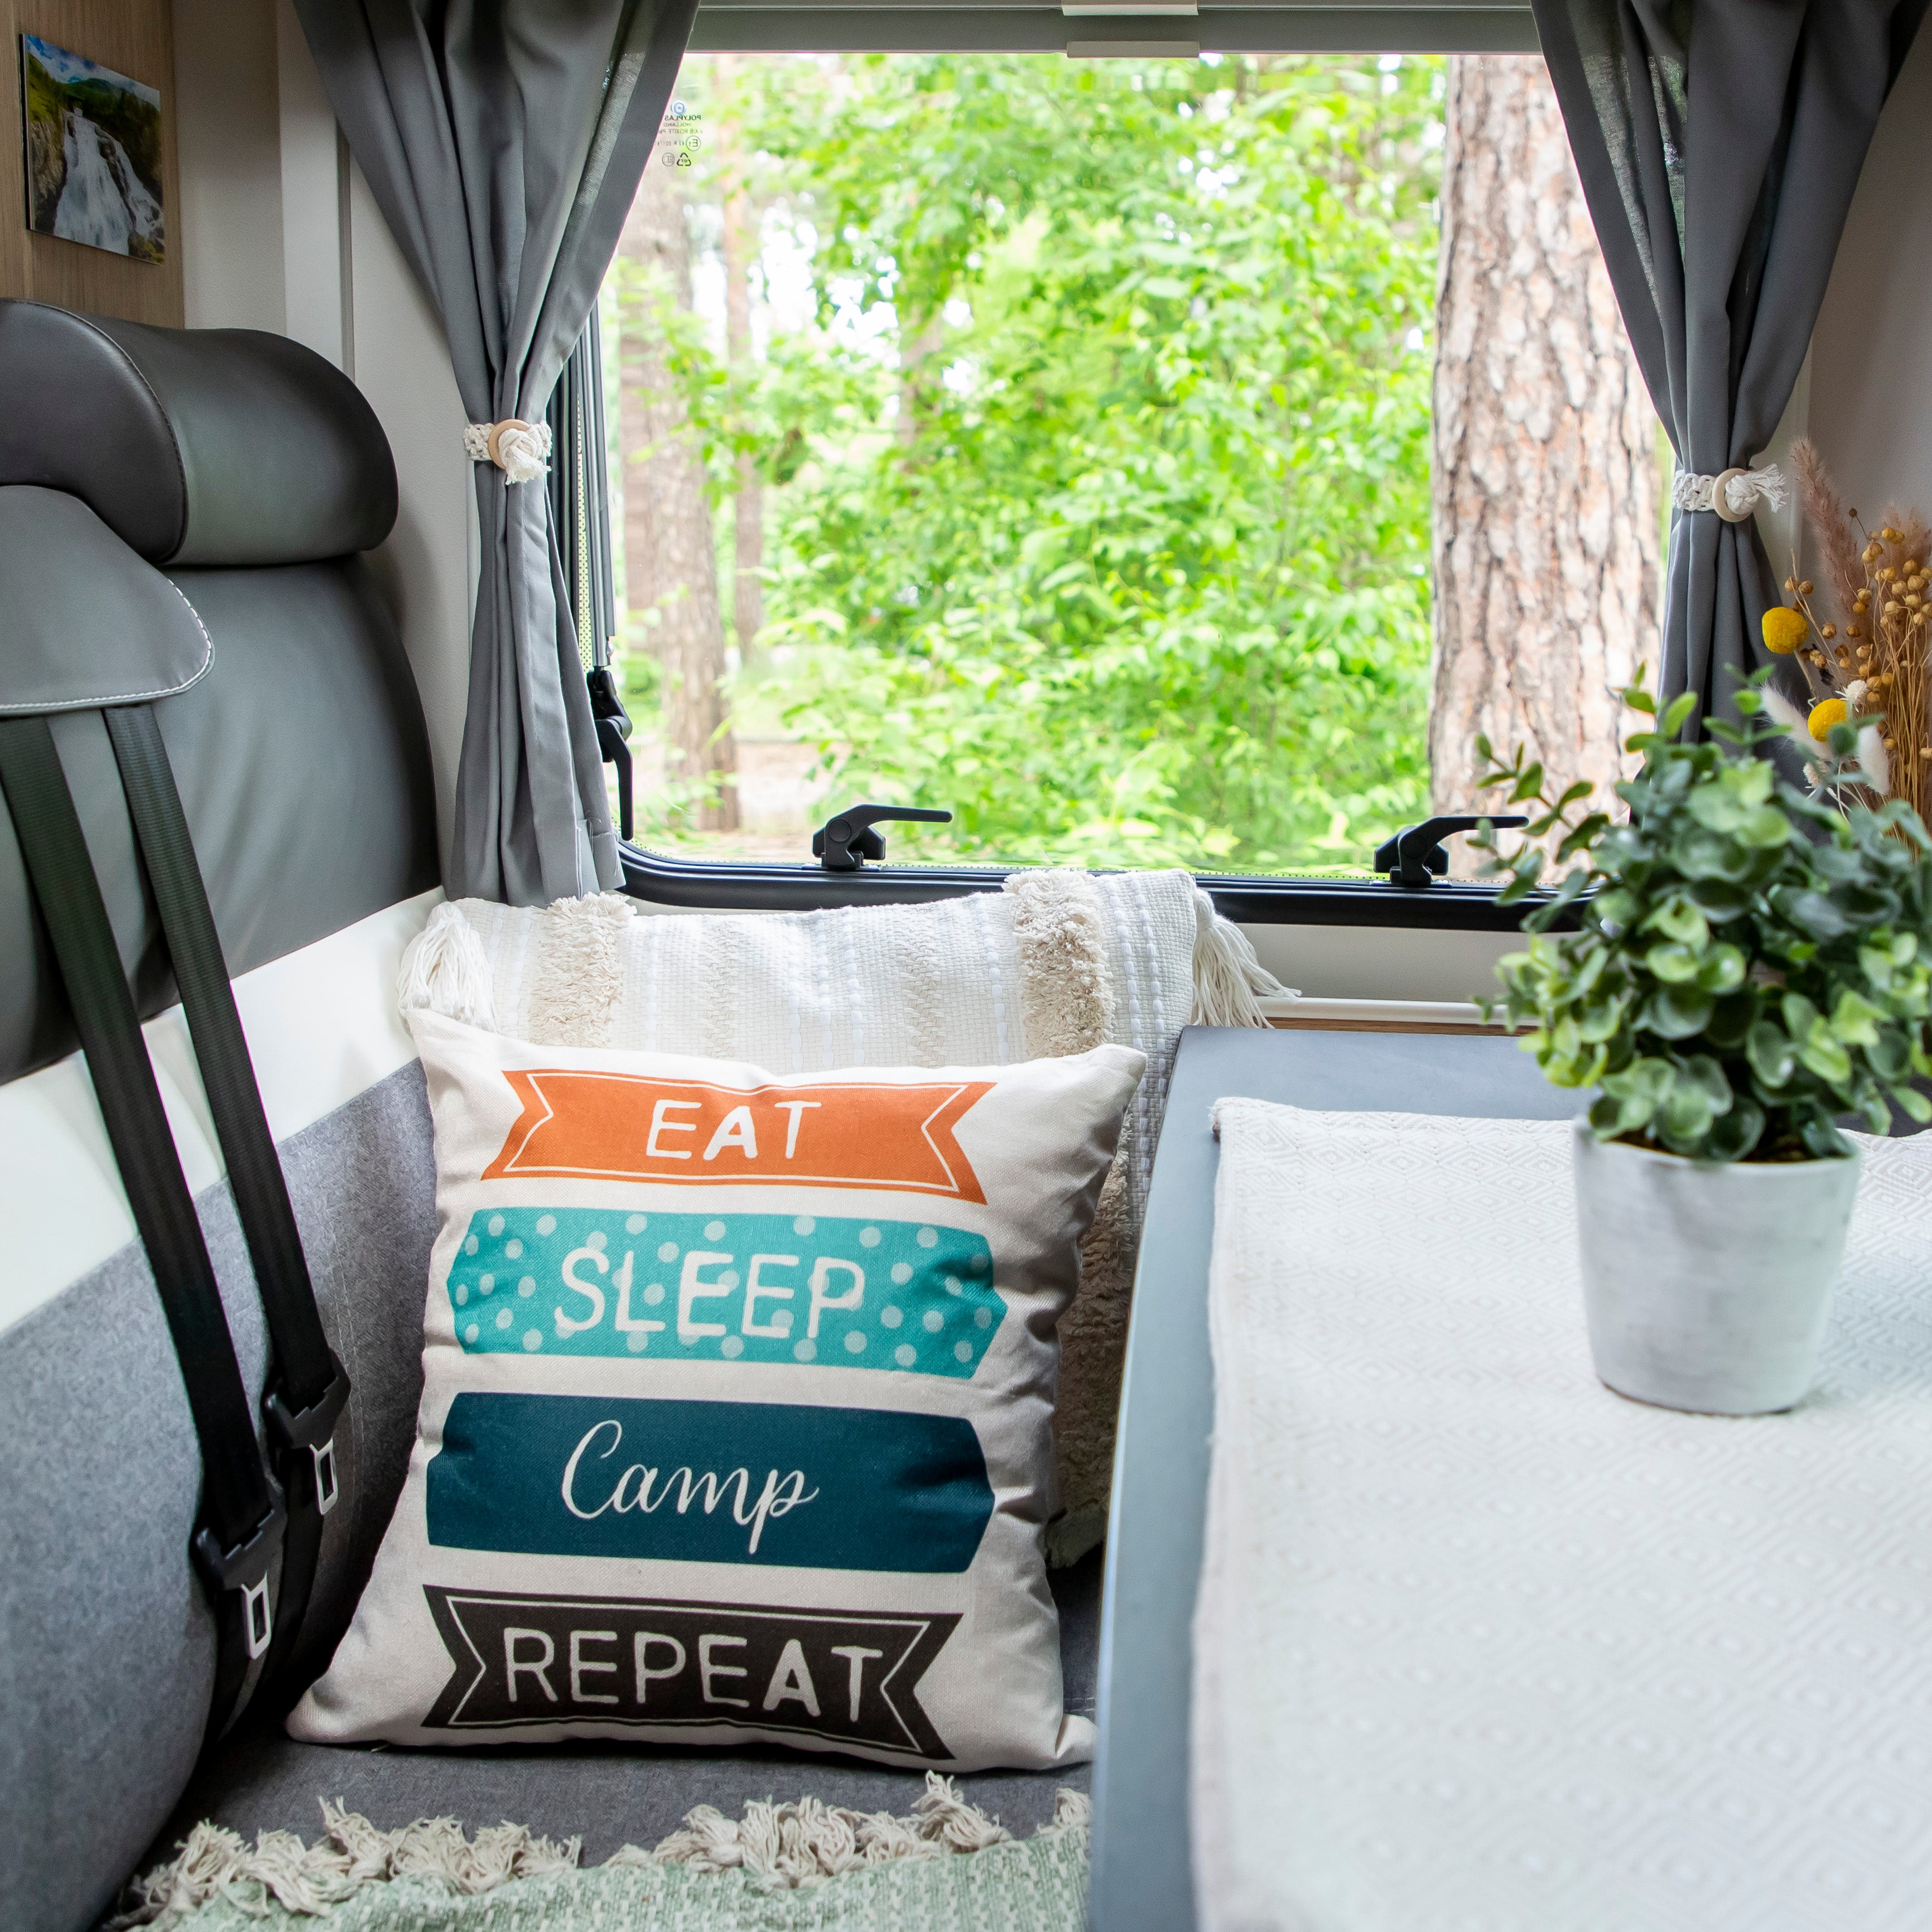 Camping Kissen als schöne Deko Idee im Wohnmobil oder Wohnwagen